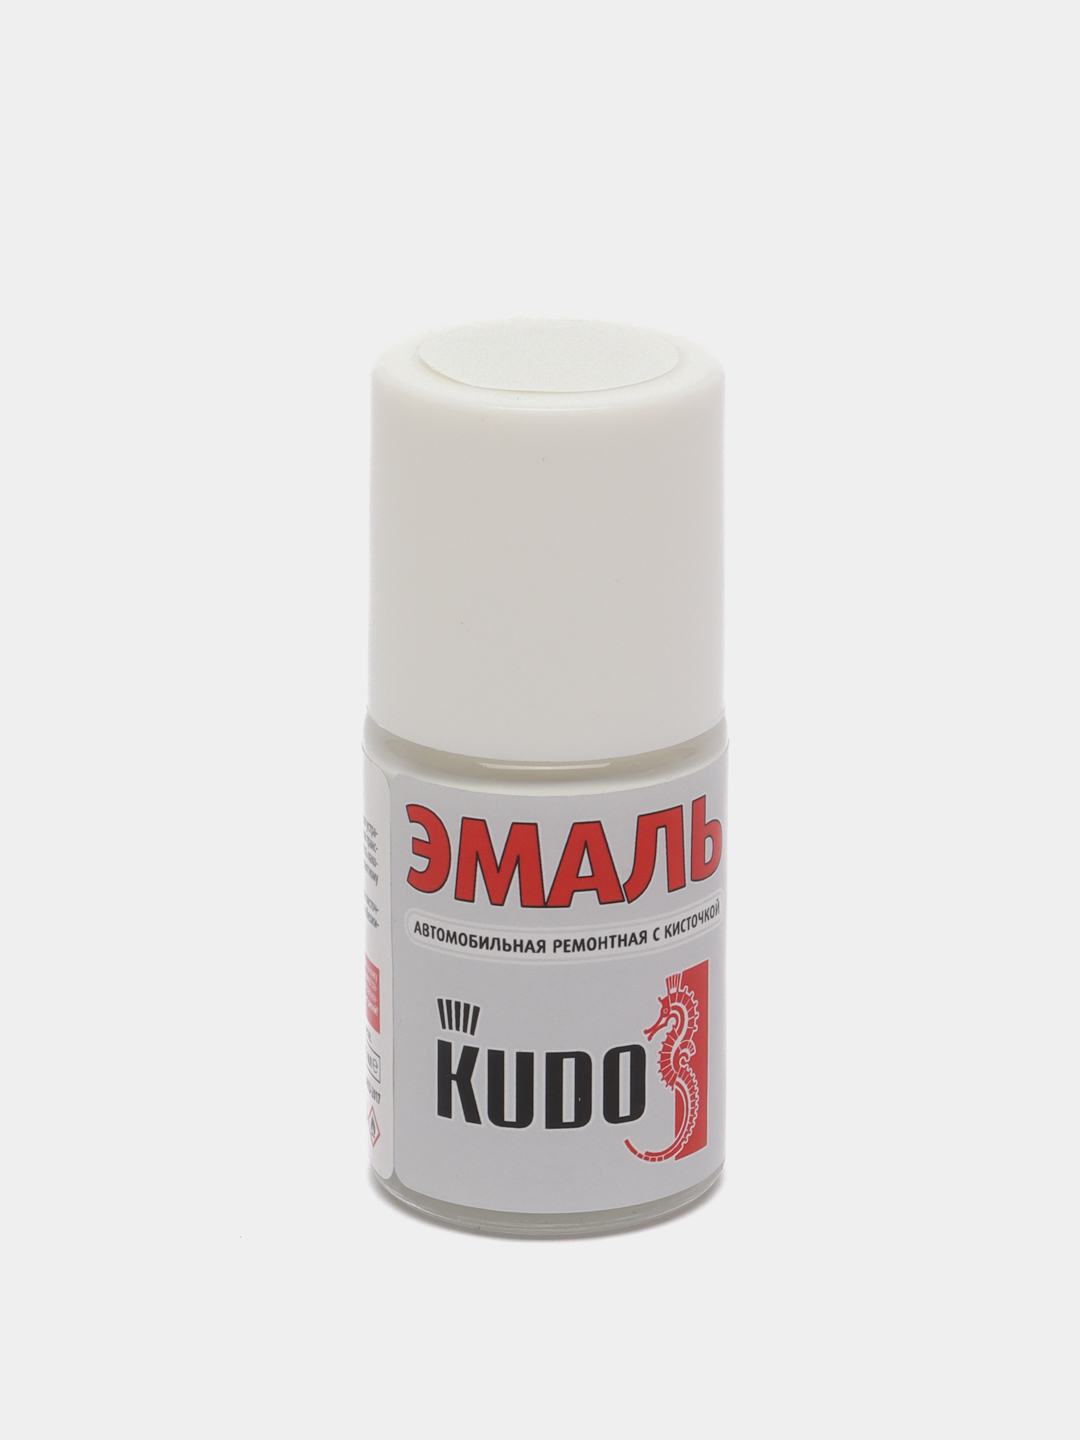 Автомобильная ремонтная эмаль Kudo с кисточкой красная ku 70165. Pgu Crystal White краска. Kudo эмаль автомобильная ремонтная красная. Эмаль ремонтная с кисточкой для ванны. Эмаль автомобильная ремонтная kudo